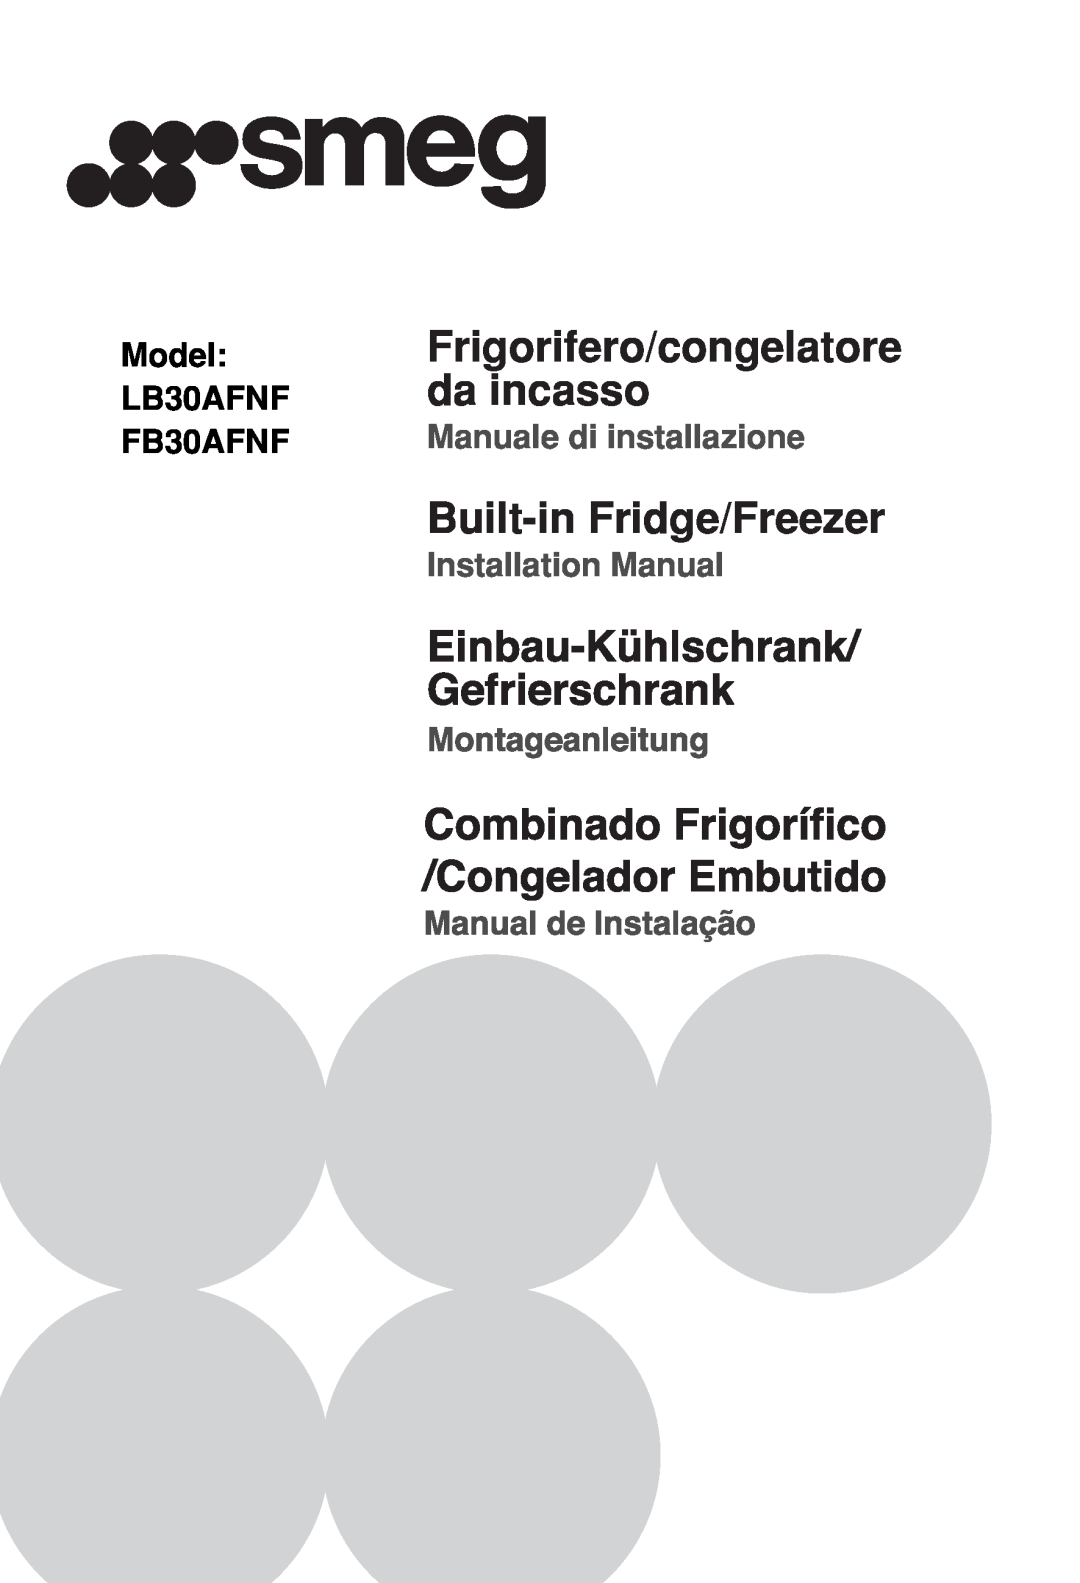 Smeg LB30AFNF manual da incasso, Frigorifero/congelatore, Built-inFridge/Freezer, Model, FB30AFNF, Installation Manual 